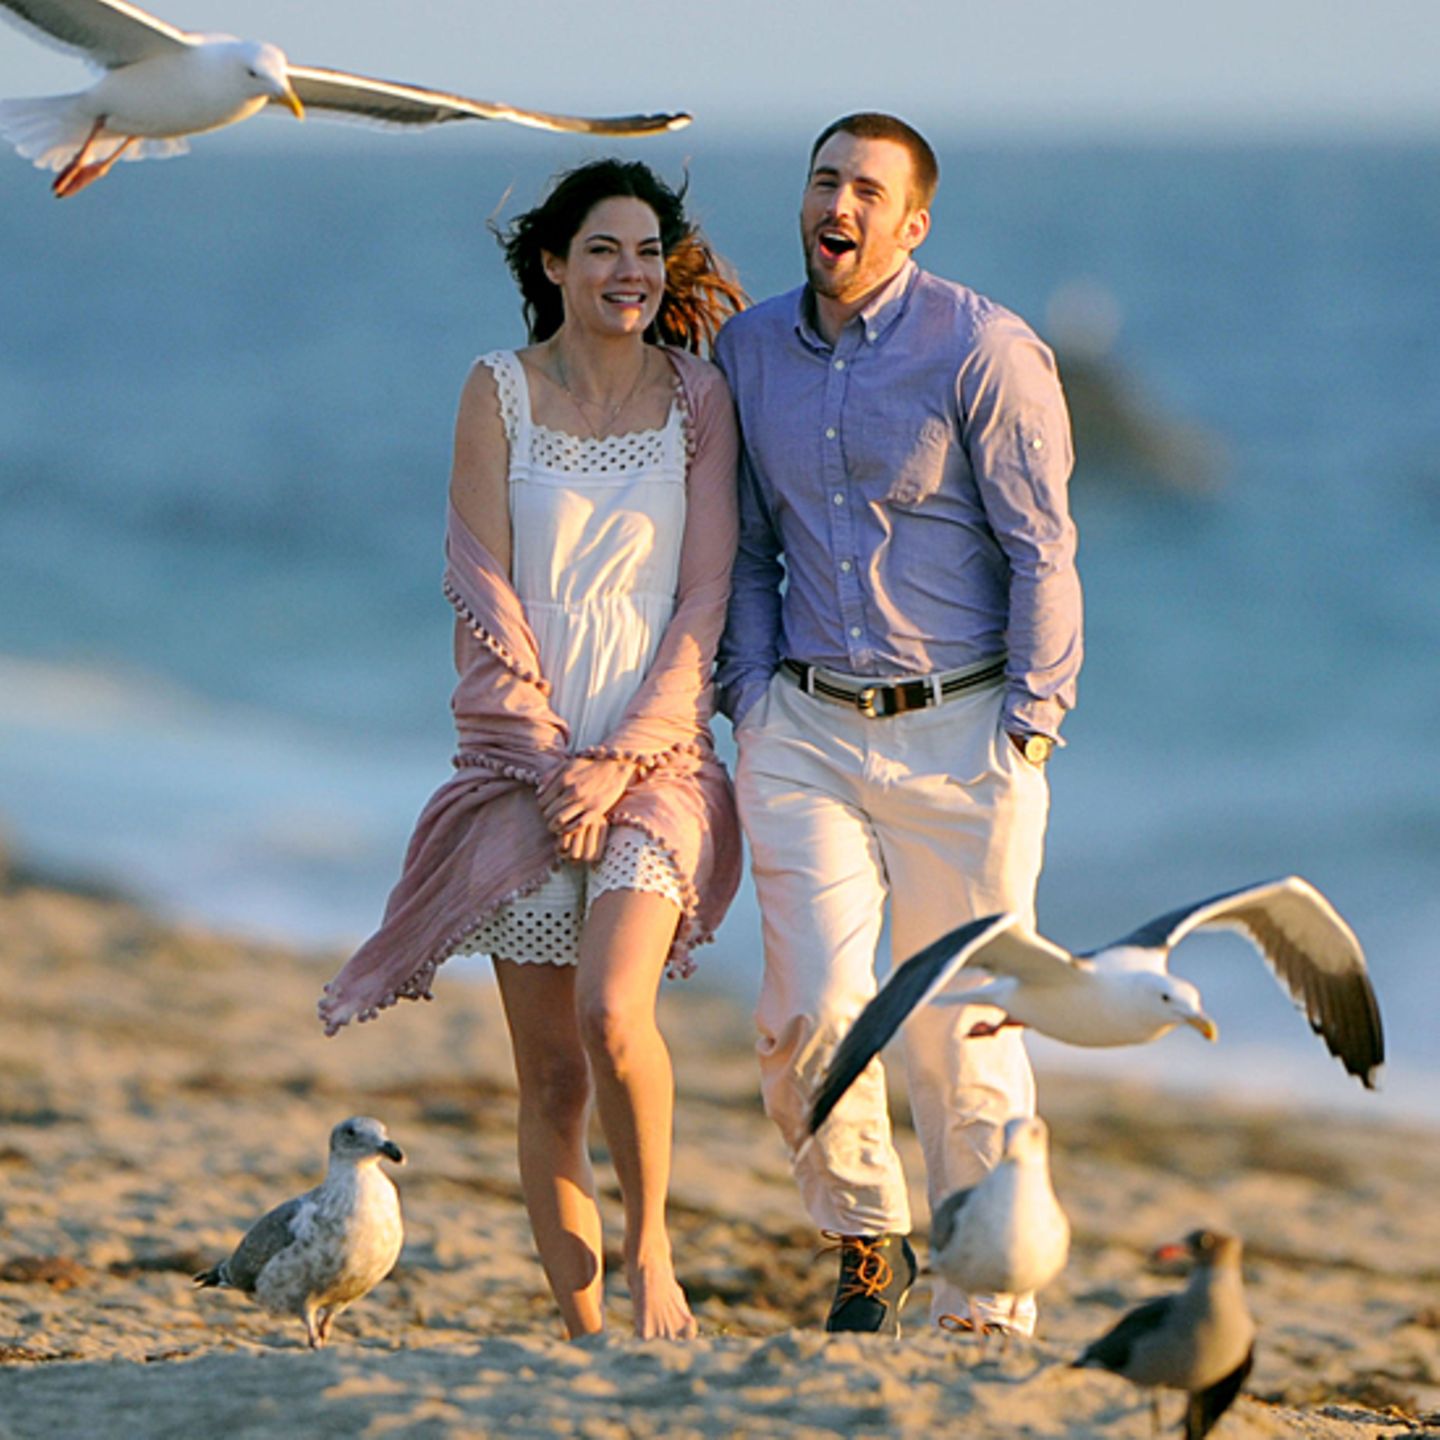 20. November 2012: In Malibu drehen Michelle Monaghan und Chris Evans den Film "A Many Splintered Thing" in romantischer Kulisse